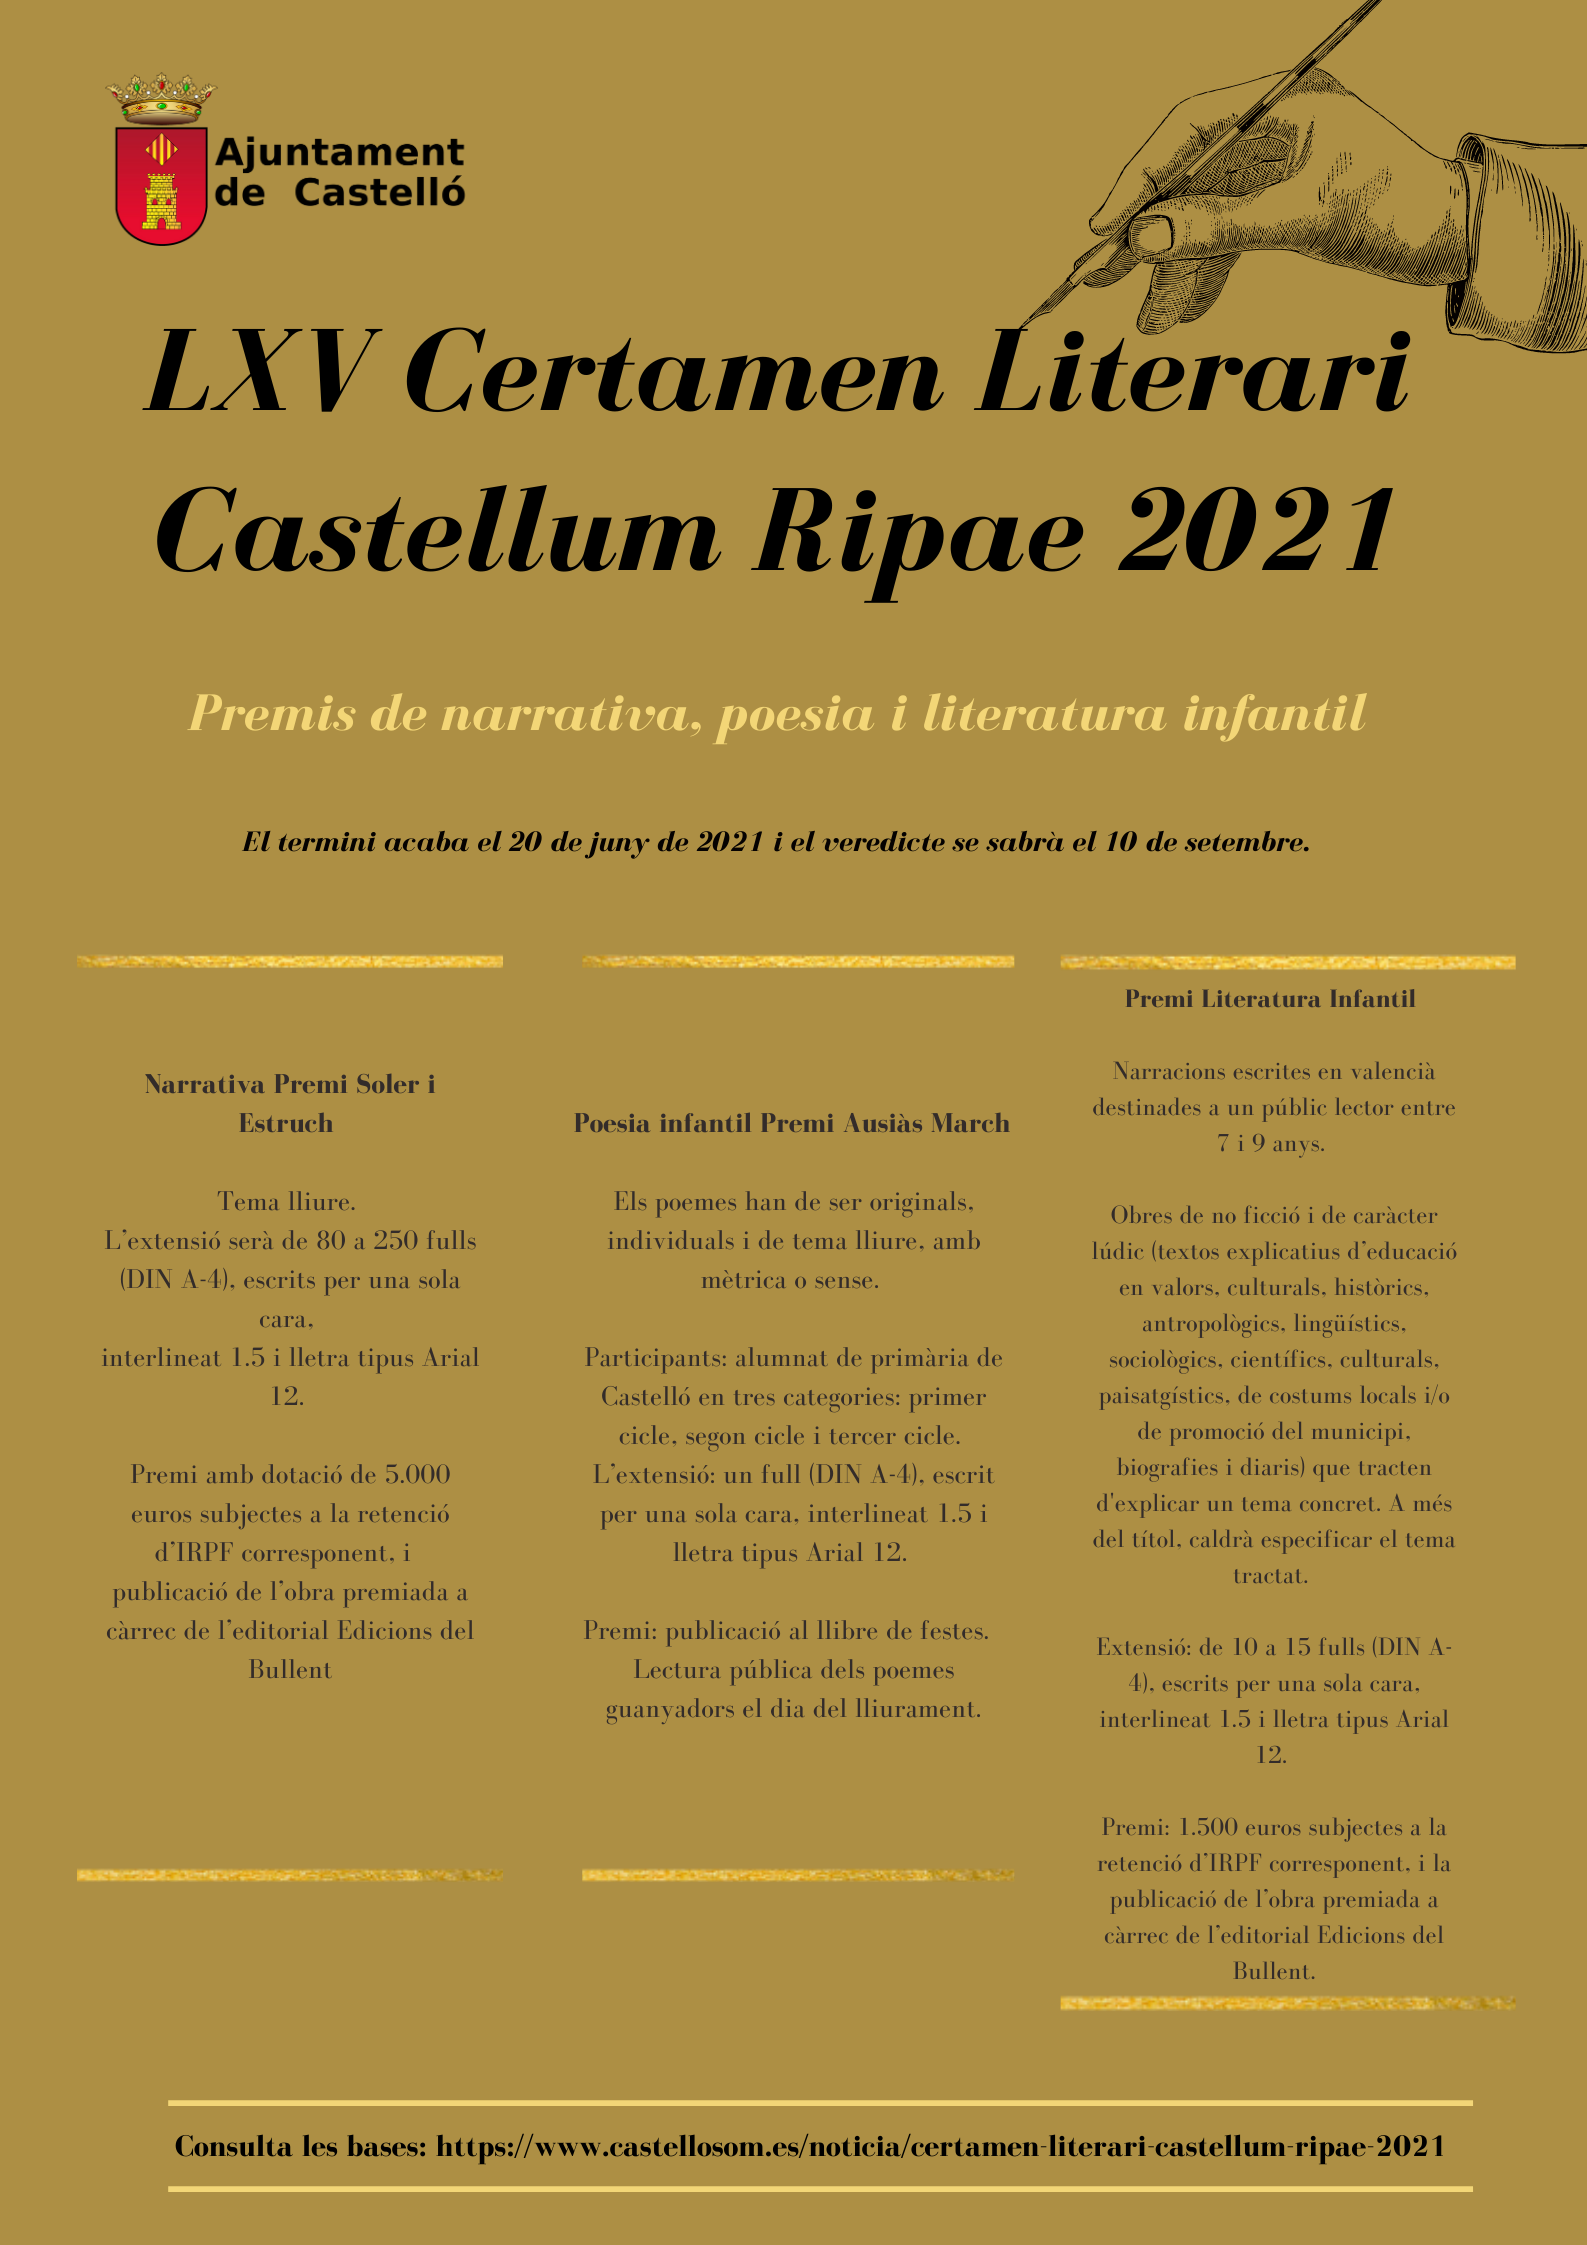 LXV Certamen Literari Castellum Ripae 2021